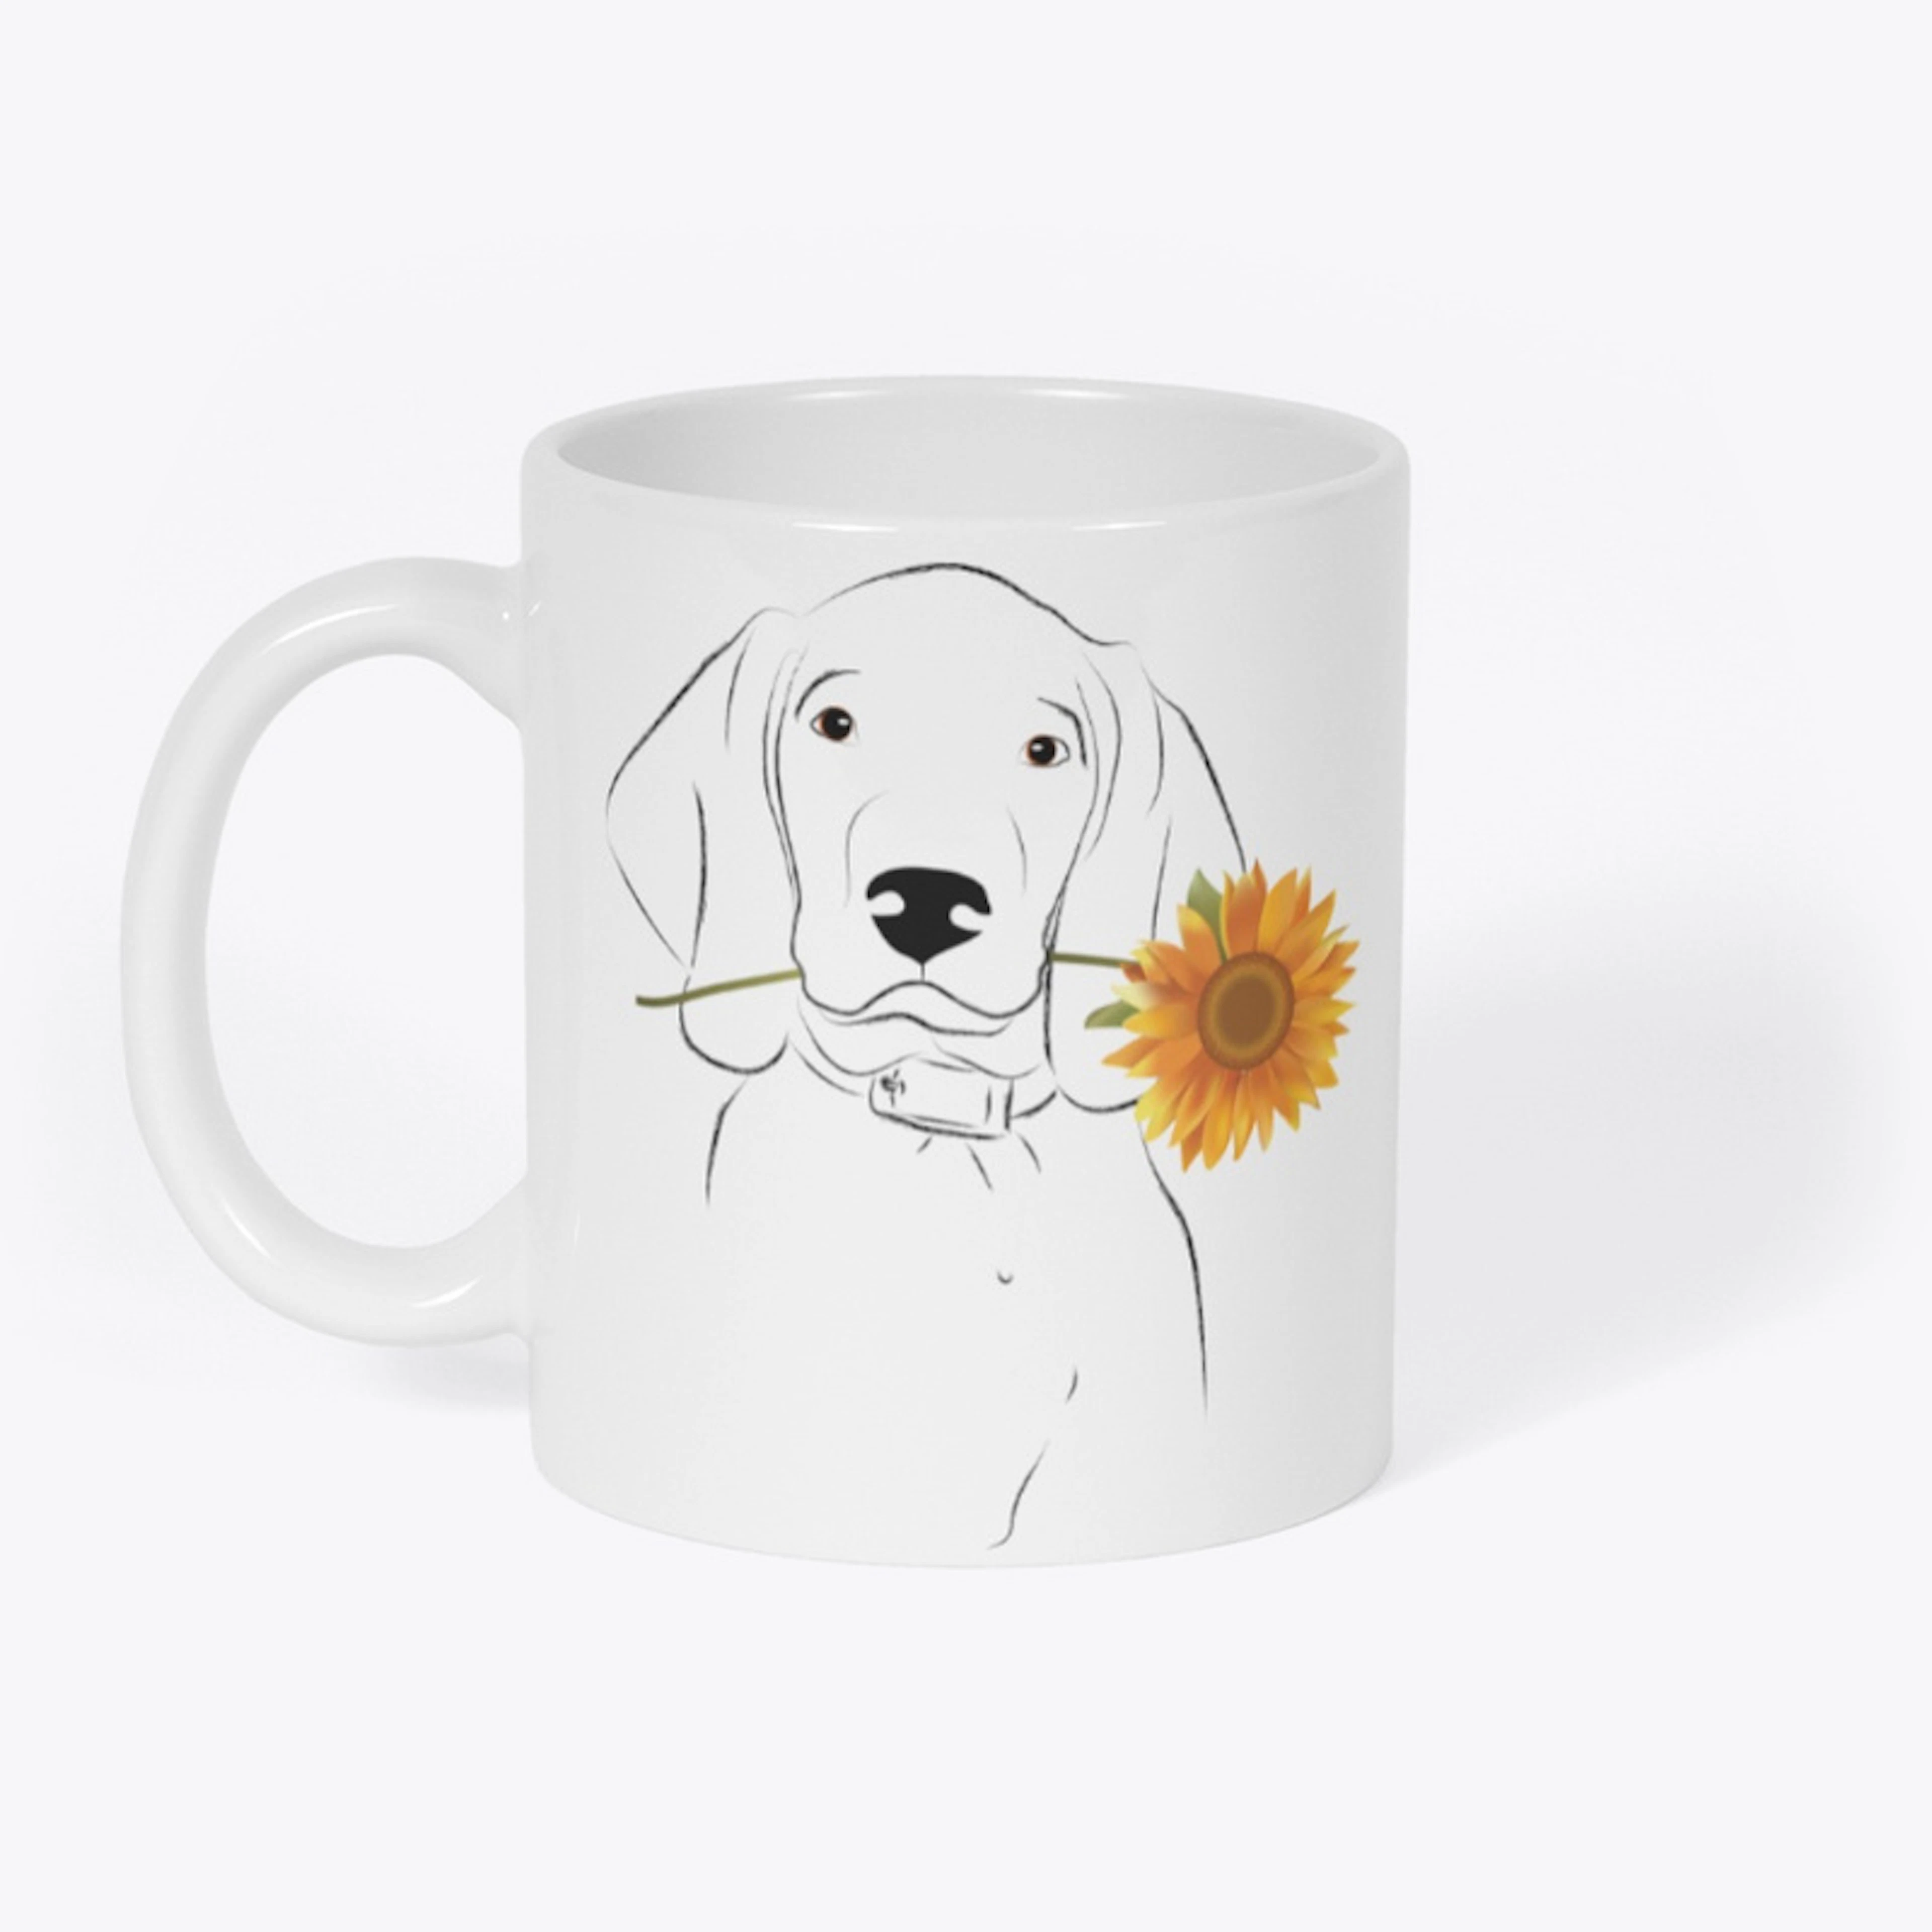 Sunflowers and Furry Friend Mug